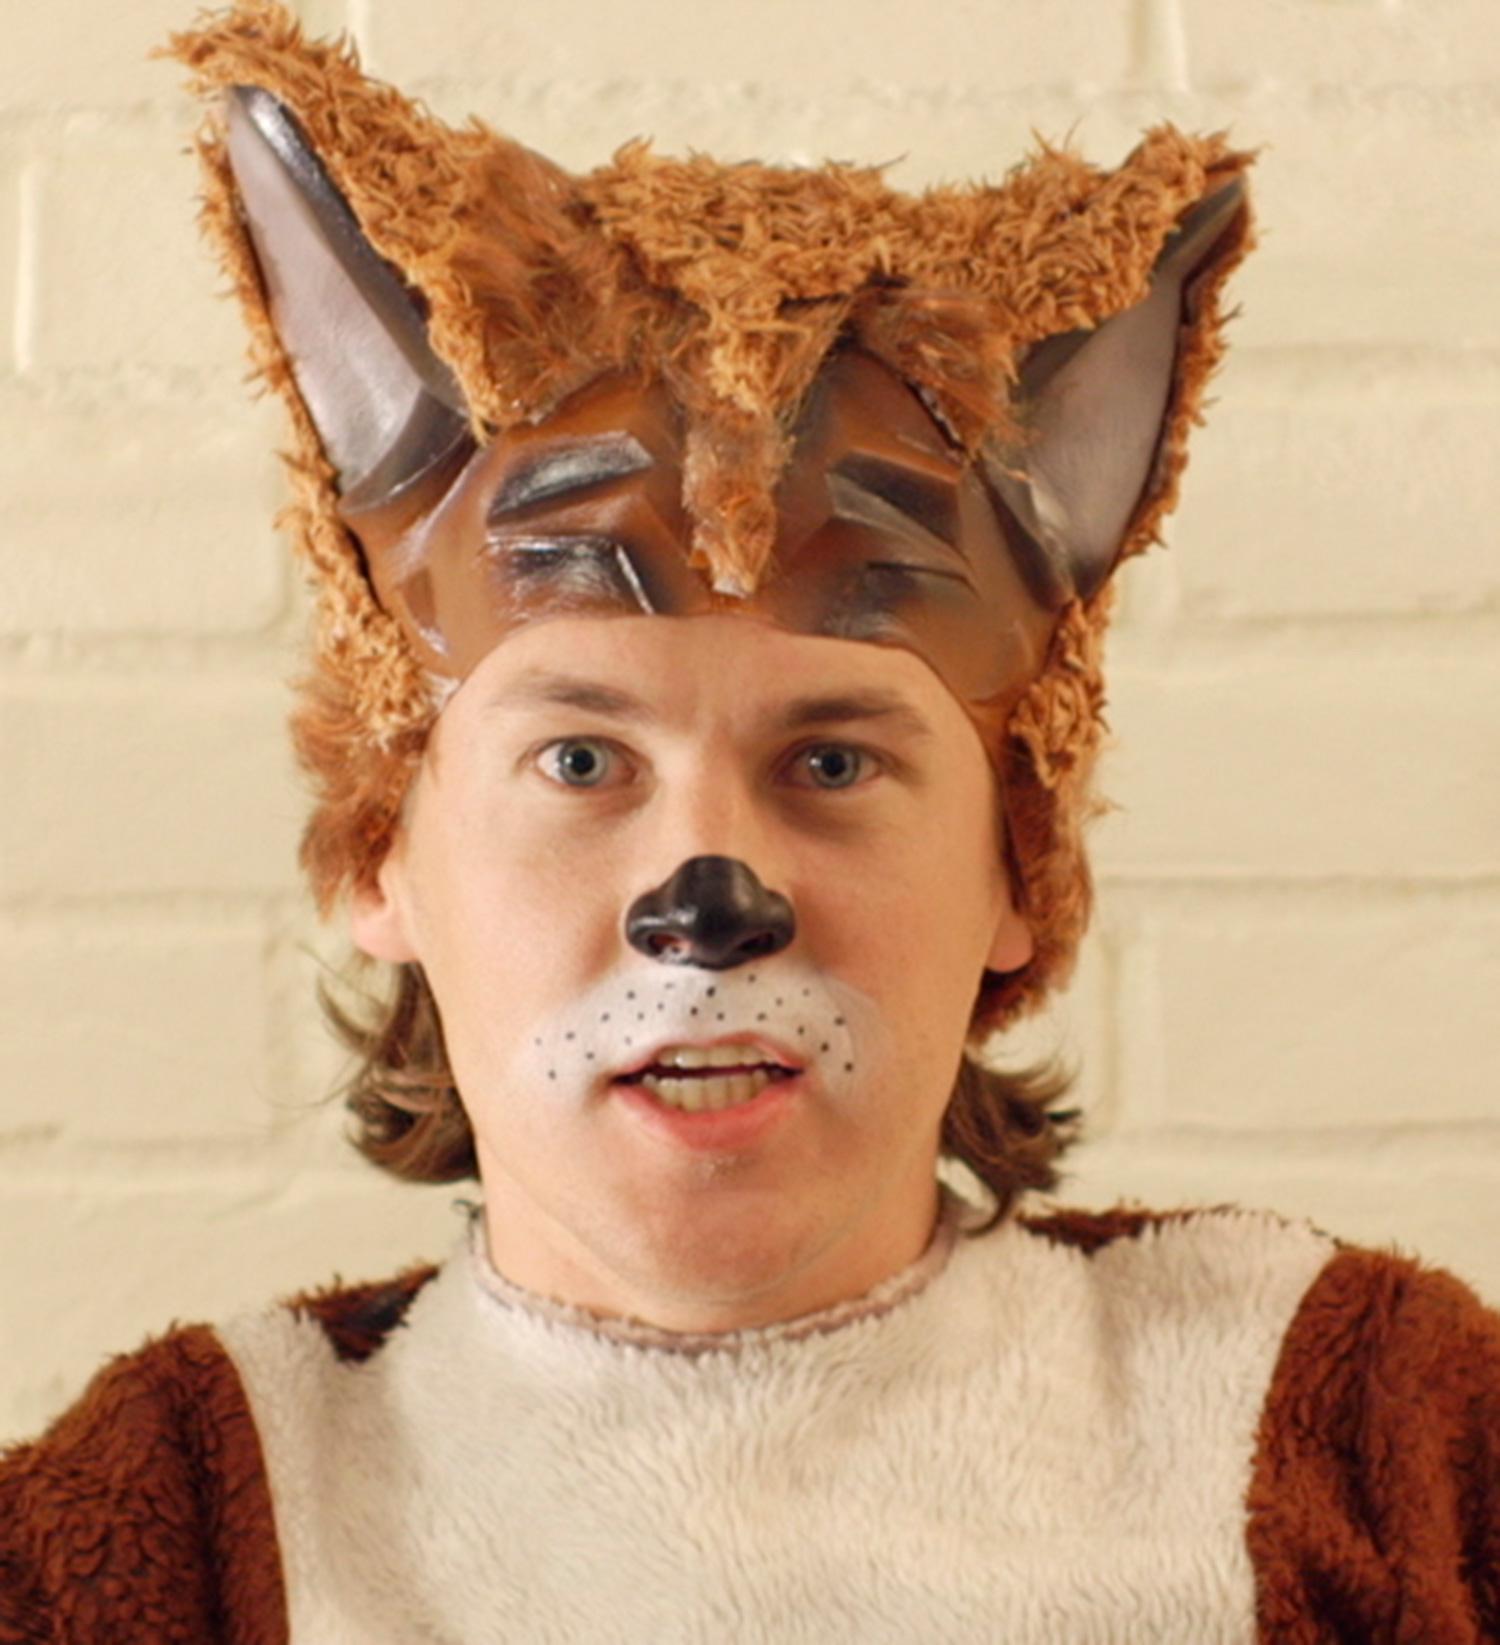 Bård Ylvisåker, klädd för låten ”The fox”.